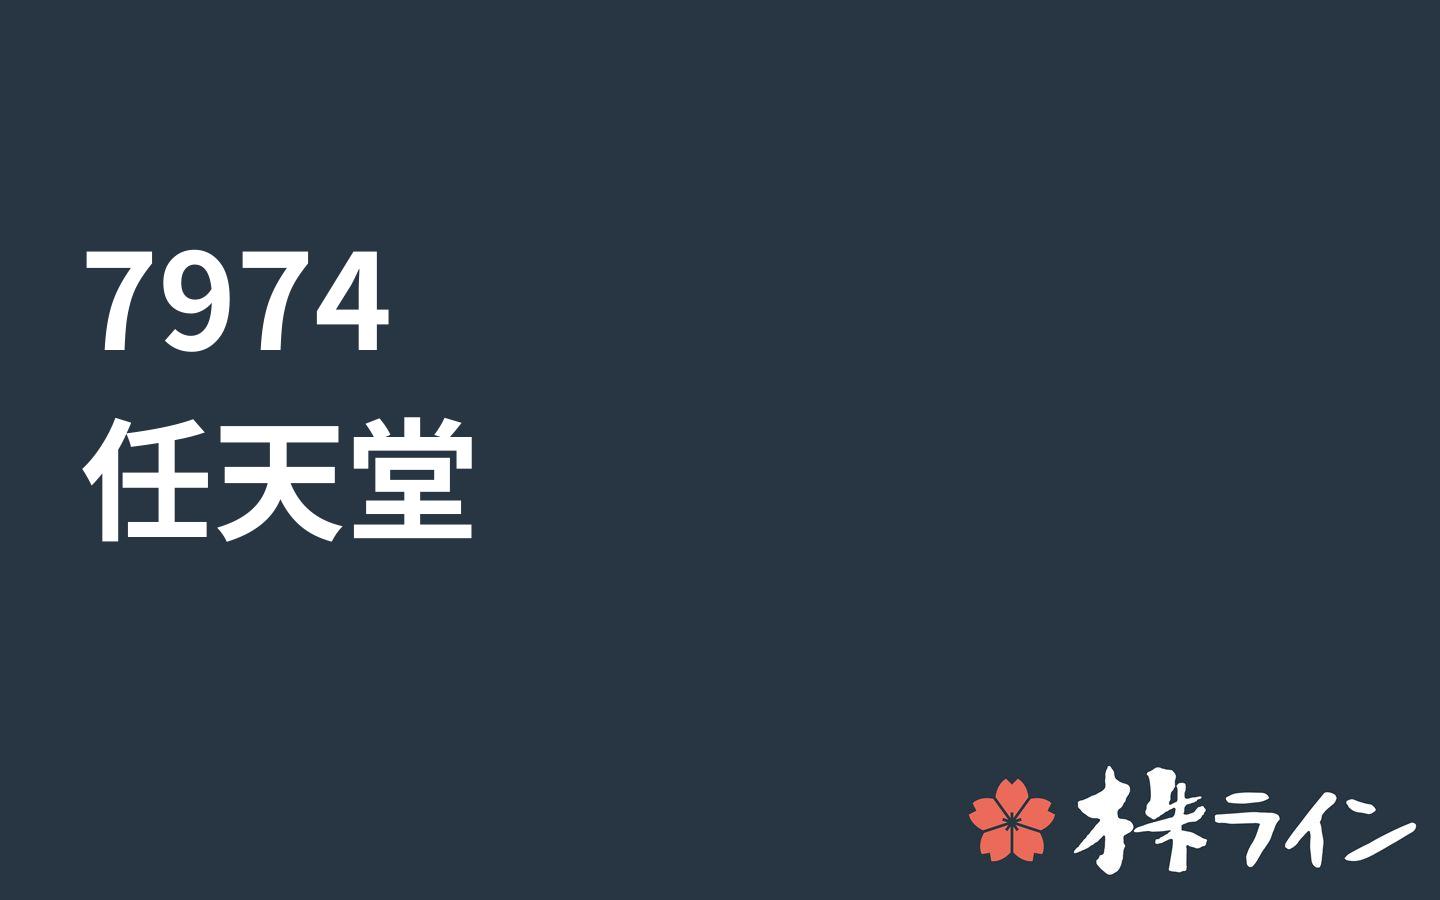 任天堂 7974 関連 株予想 ツイッター 株ライン